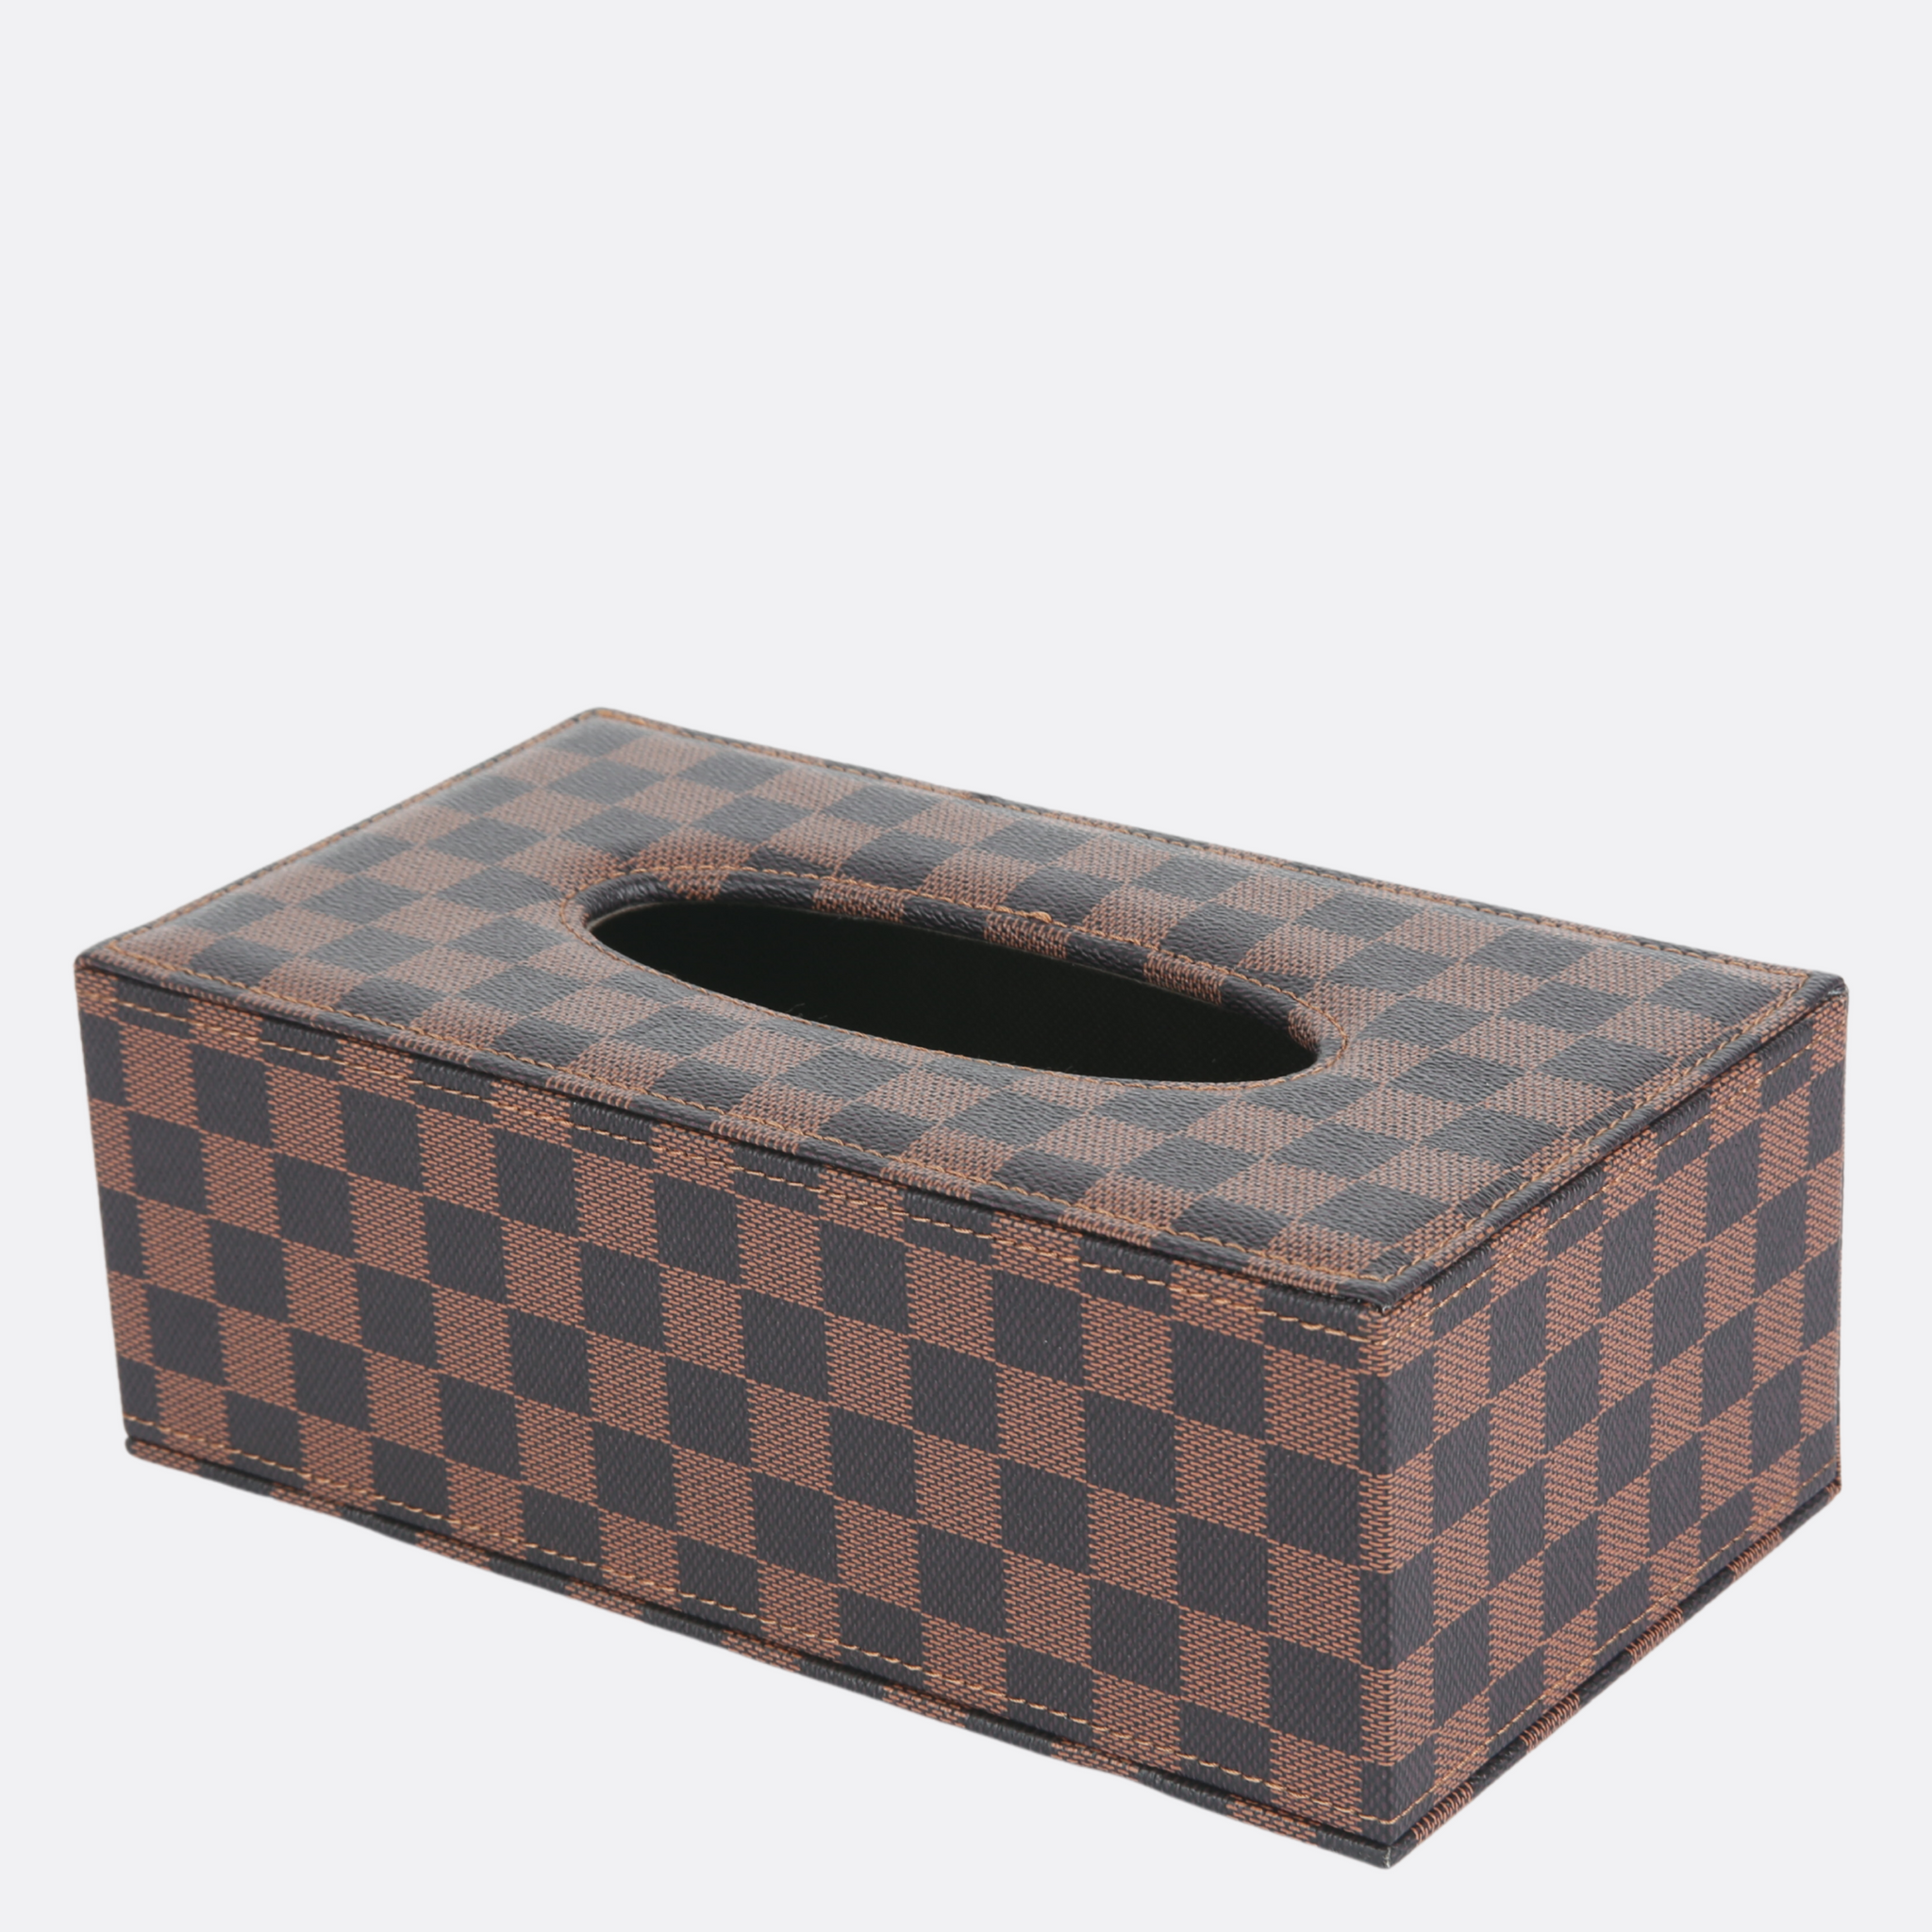 Lv tissue box